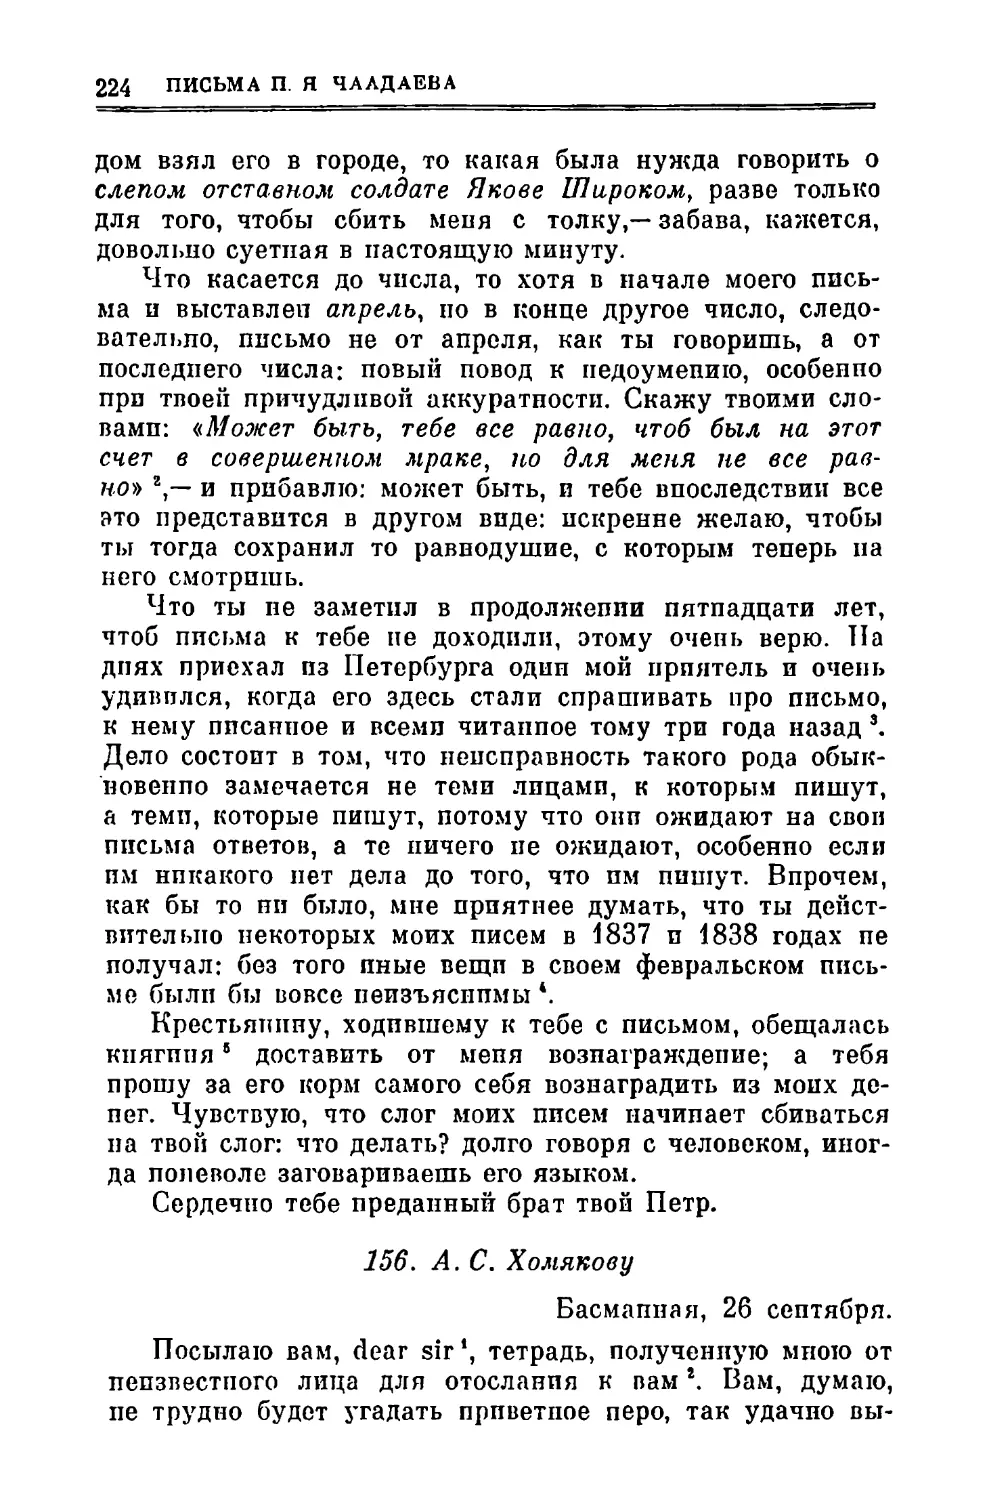 156. Хомякову А.С. 26.IX